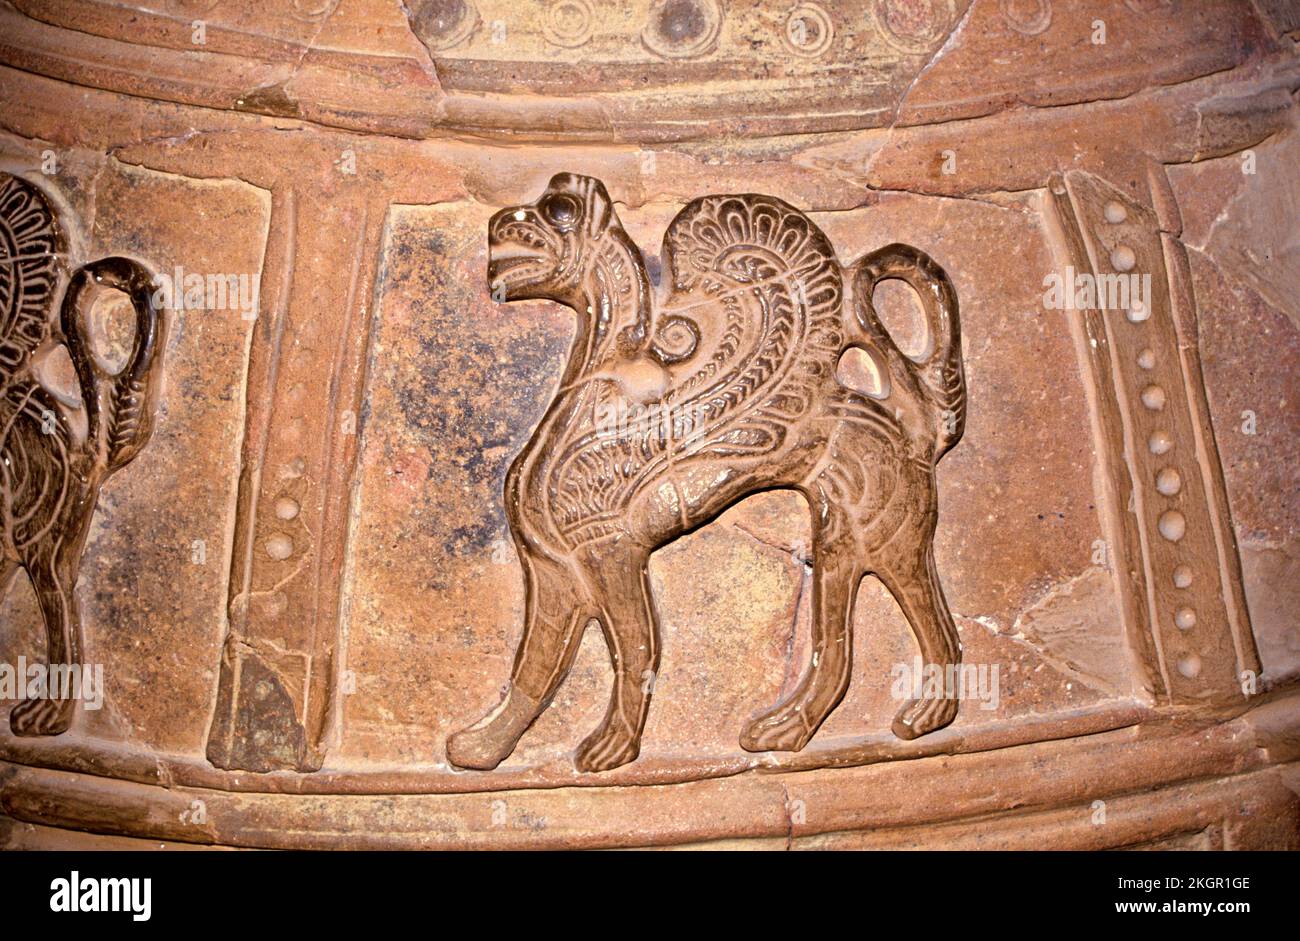 Un griffon, sculpté dans une urne dans l'ancienne ville de Knosses. Les Griffins étaient des créatures mythologiques importantes en Grèce et dans la culture minoenne. Banque D'Images